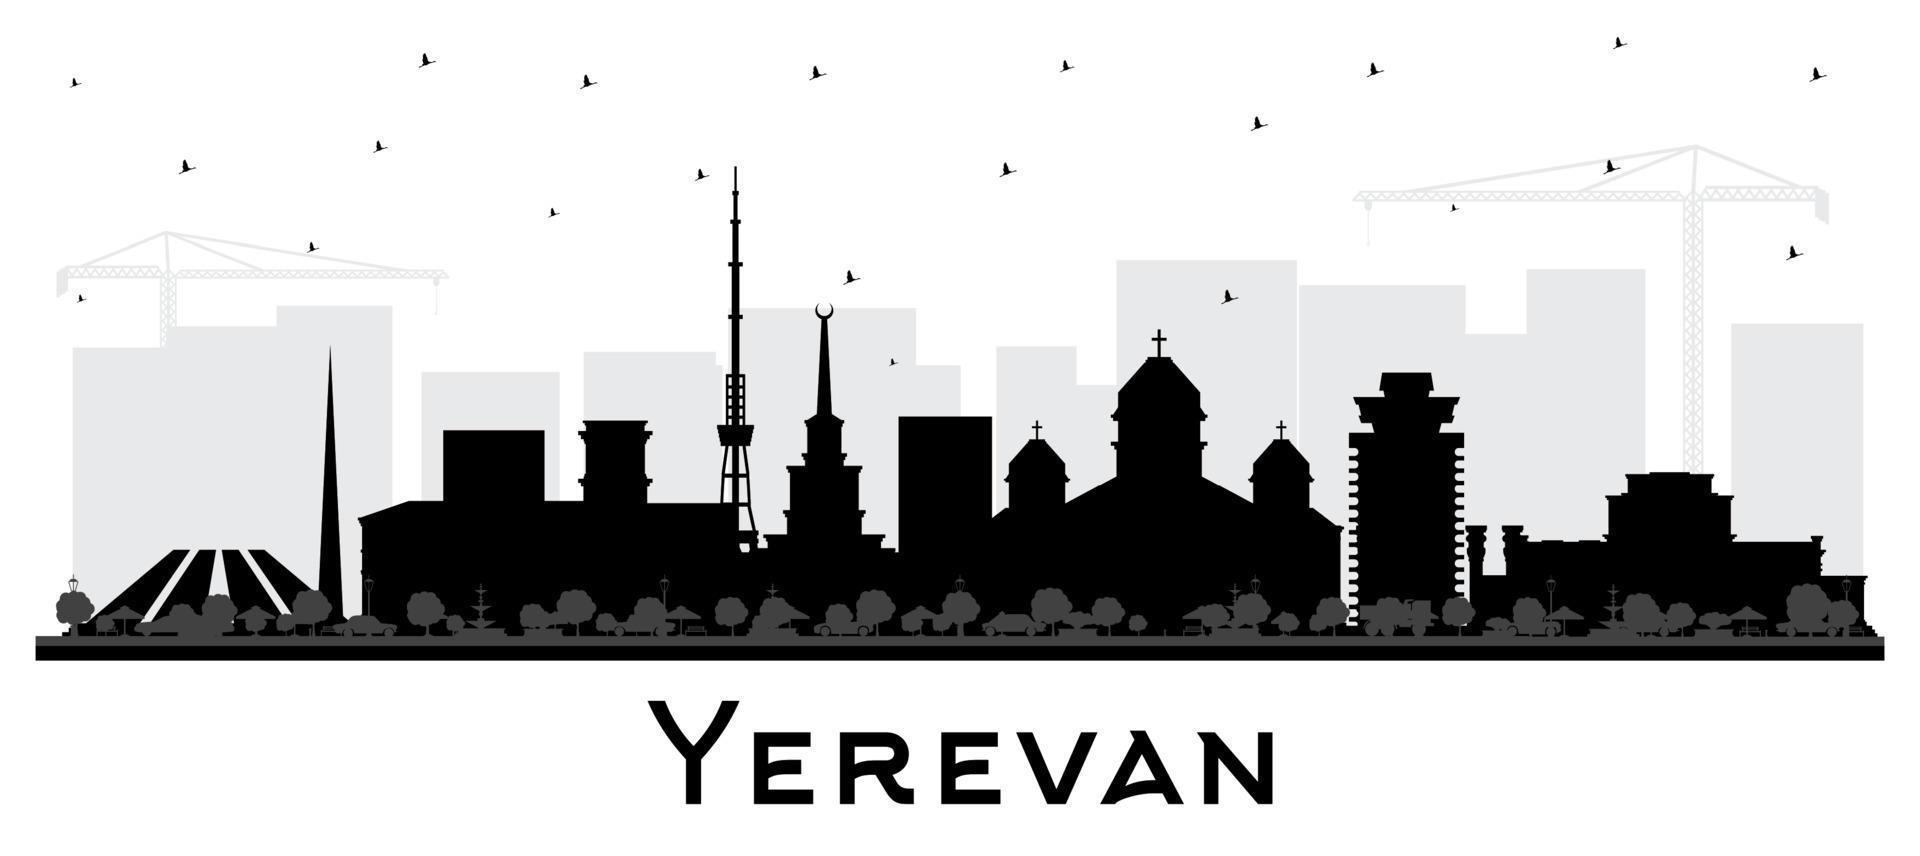 ereván Armenia ciudad horizonte silueta con negro edificios aislado en blanco. ereván paisaje urbano con puntos de referencia negocio viaje y turismo concepto con histórico arquitectura. vector